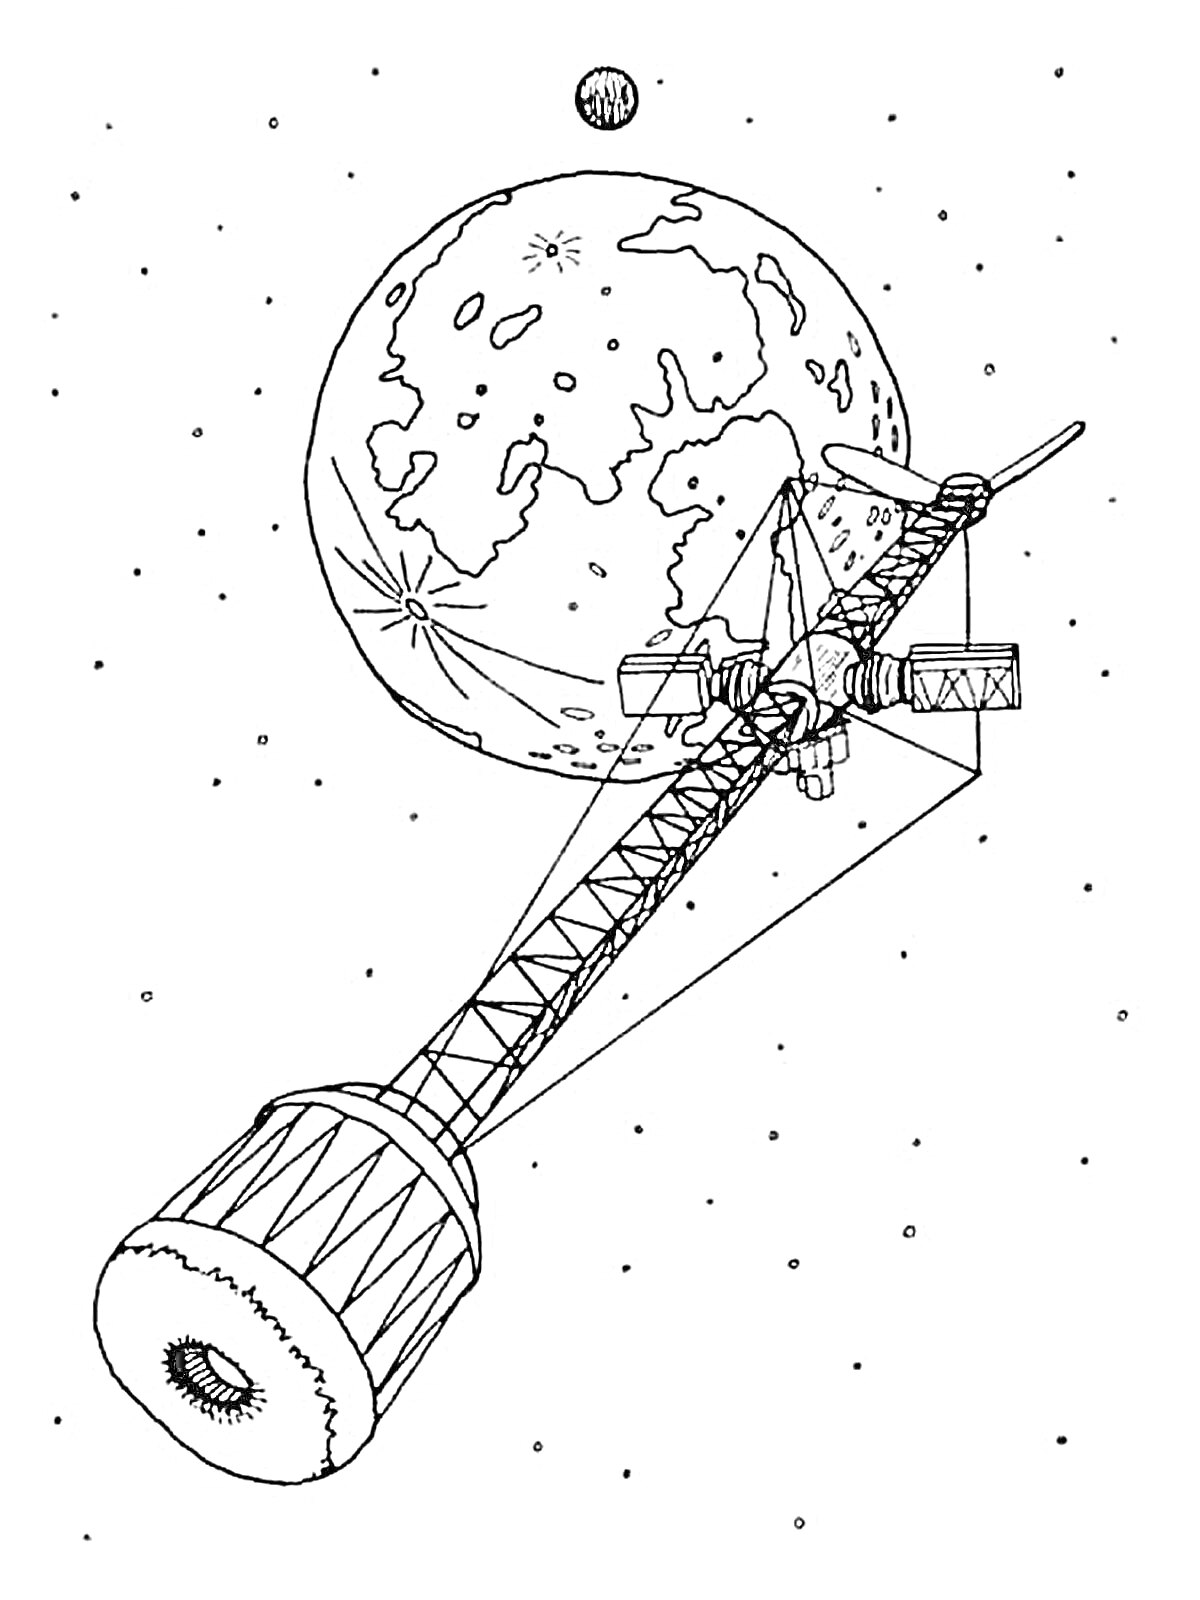 Космическая станция на орбите луны с пролетающей кометой